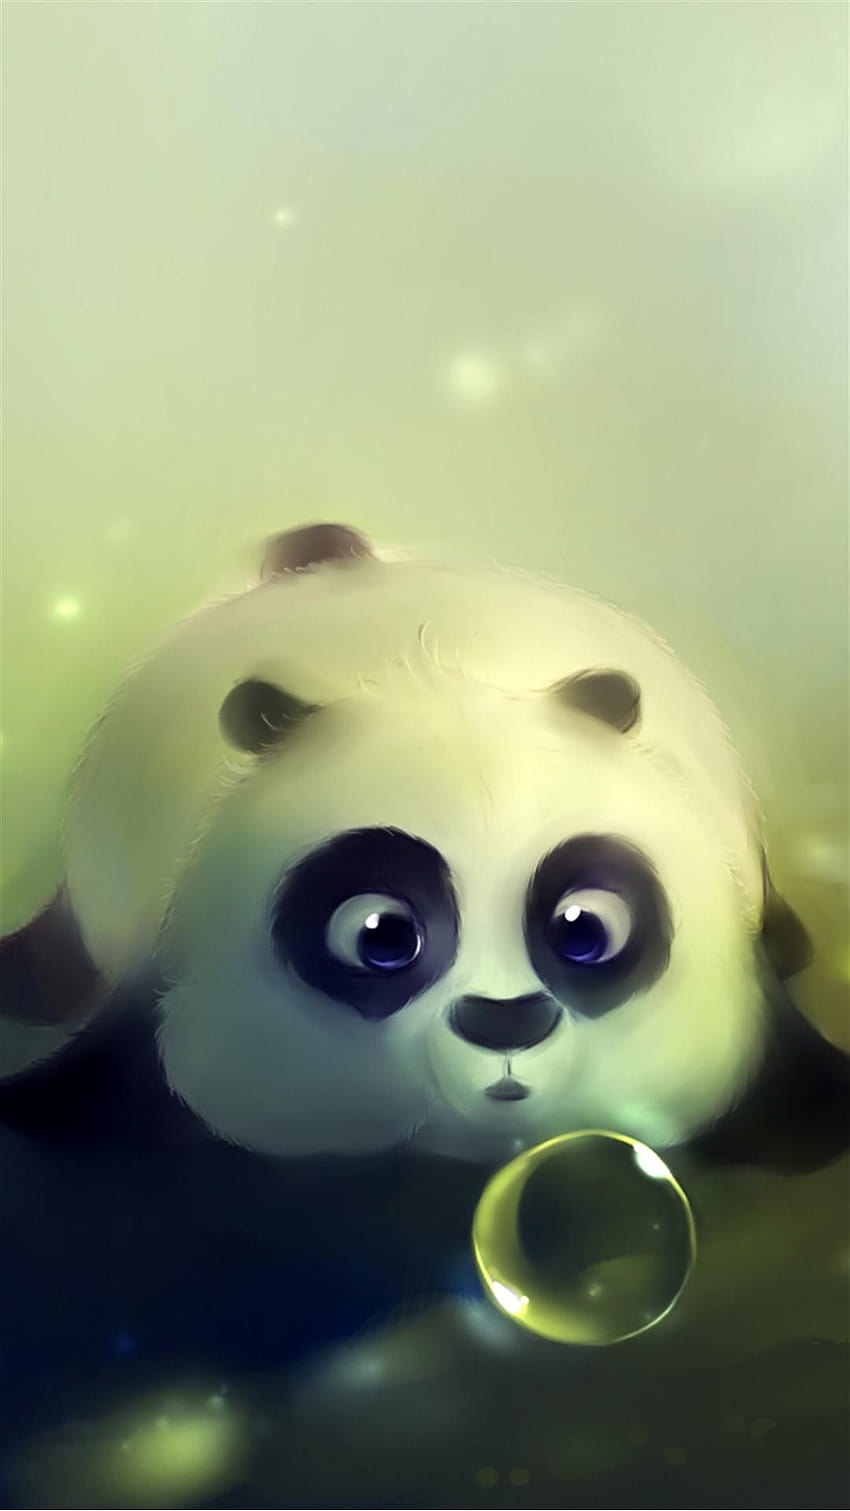 Cute Panda Bubble iPhone 6 Plus, cute panda iphone HD phone wallpaper